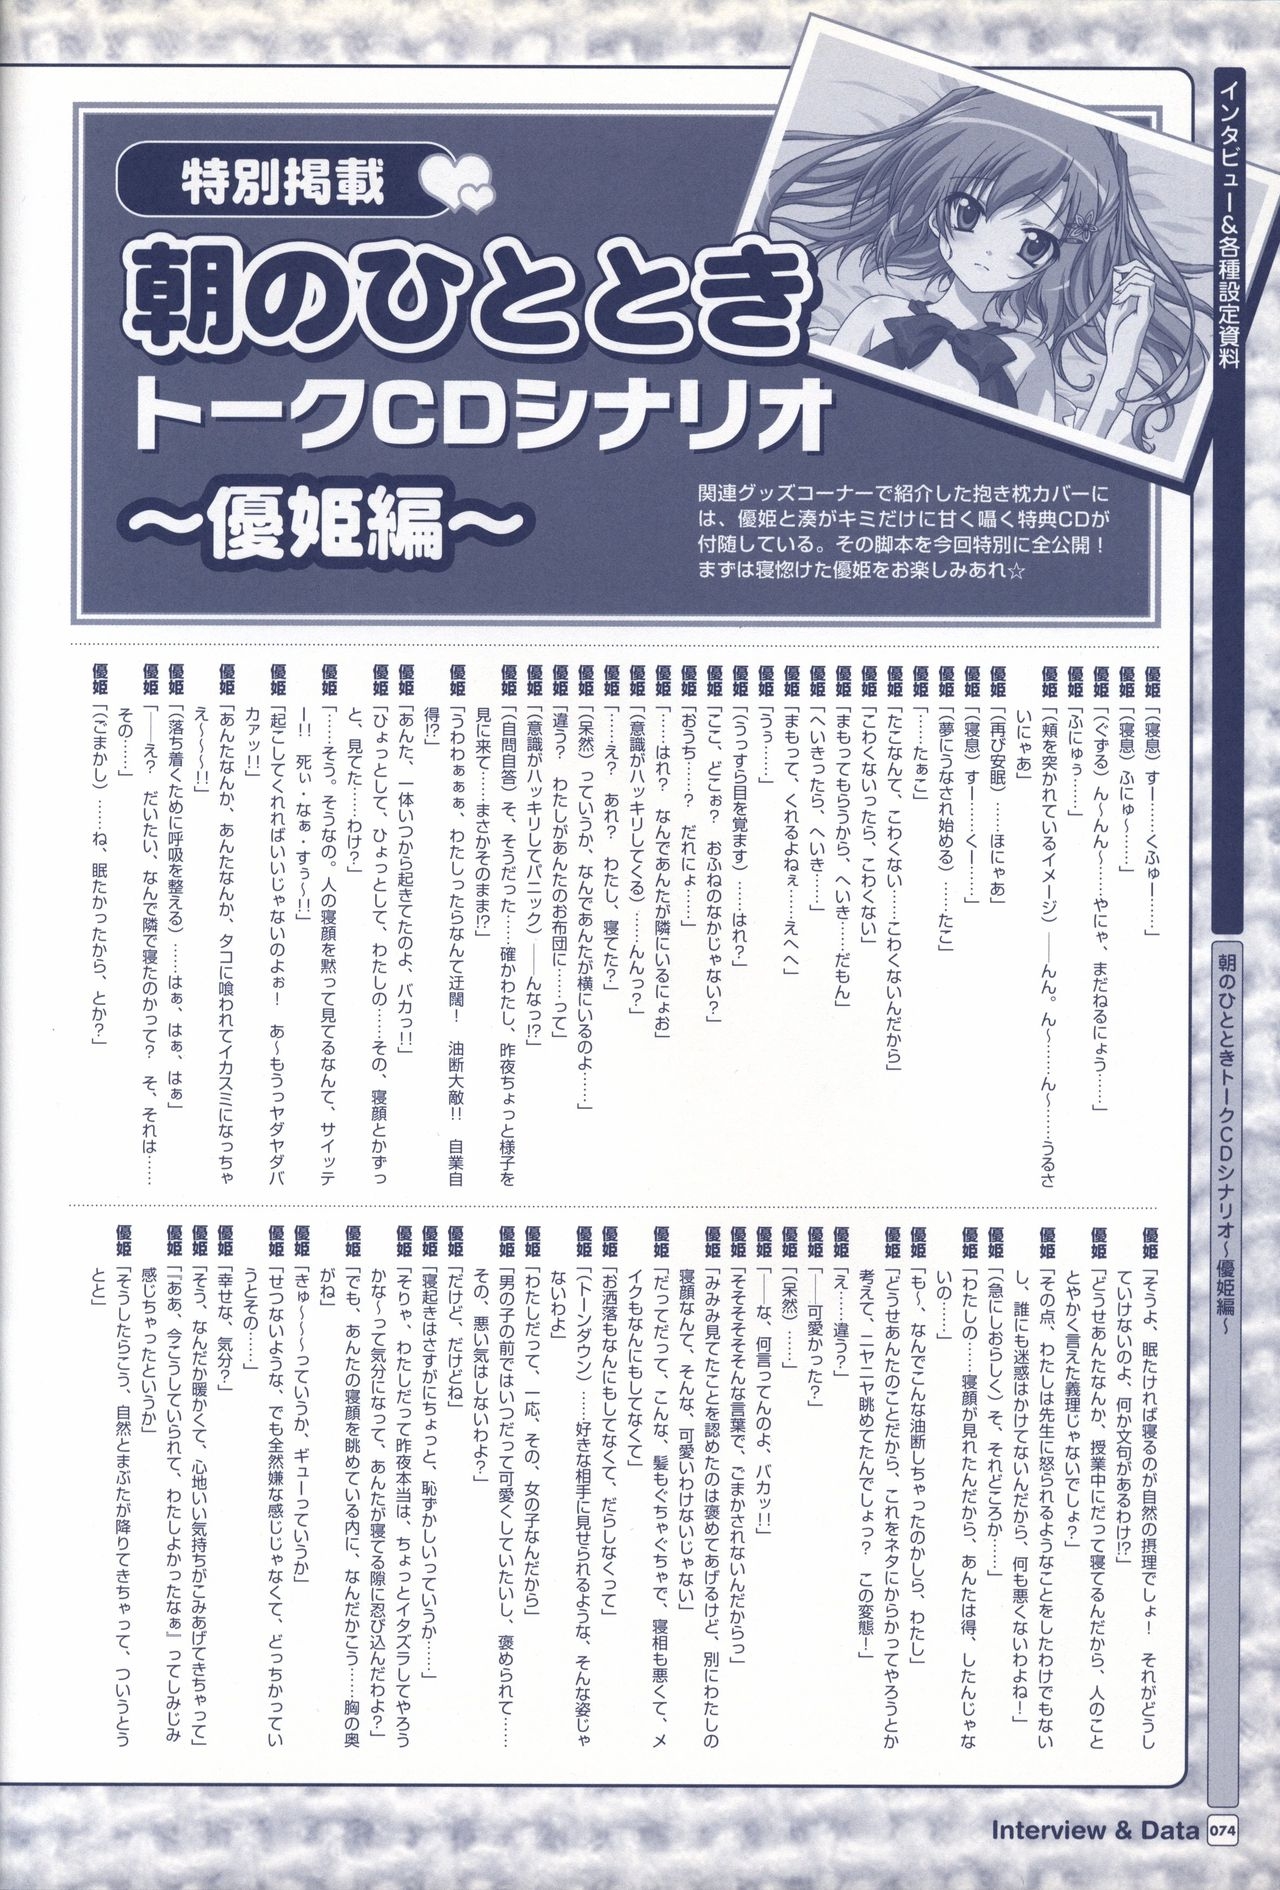 TV ANIME Akaneiro ni Somaru Saka Visual Guide Book 74